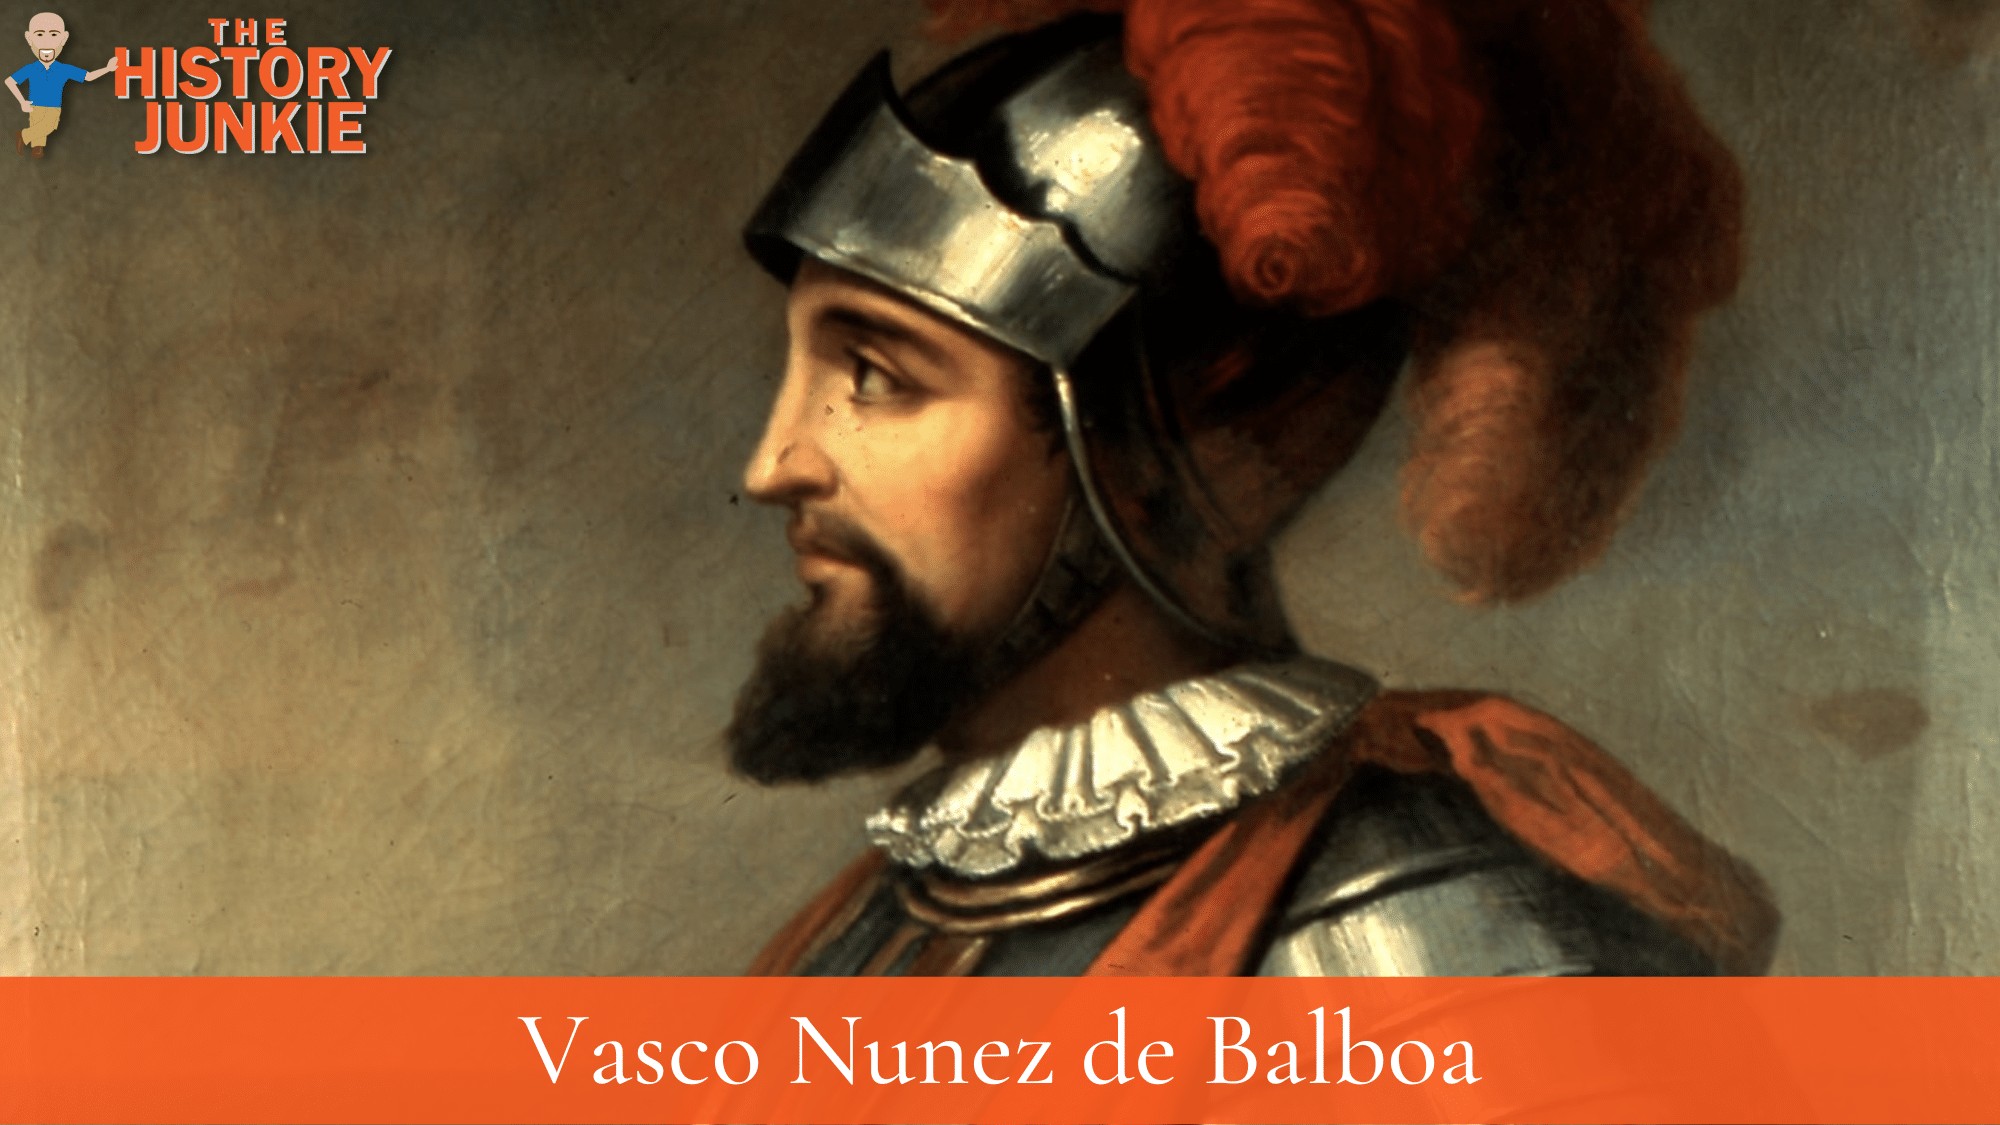 Vasco Nunez de Balboa